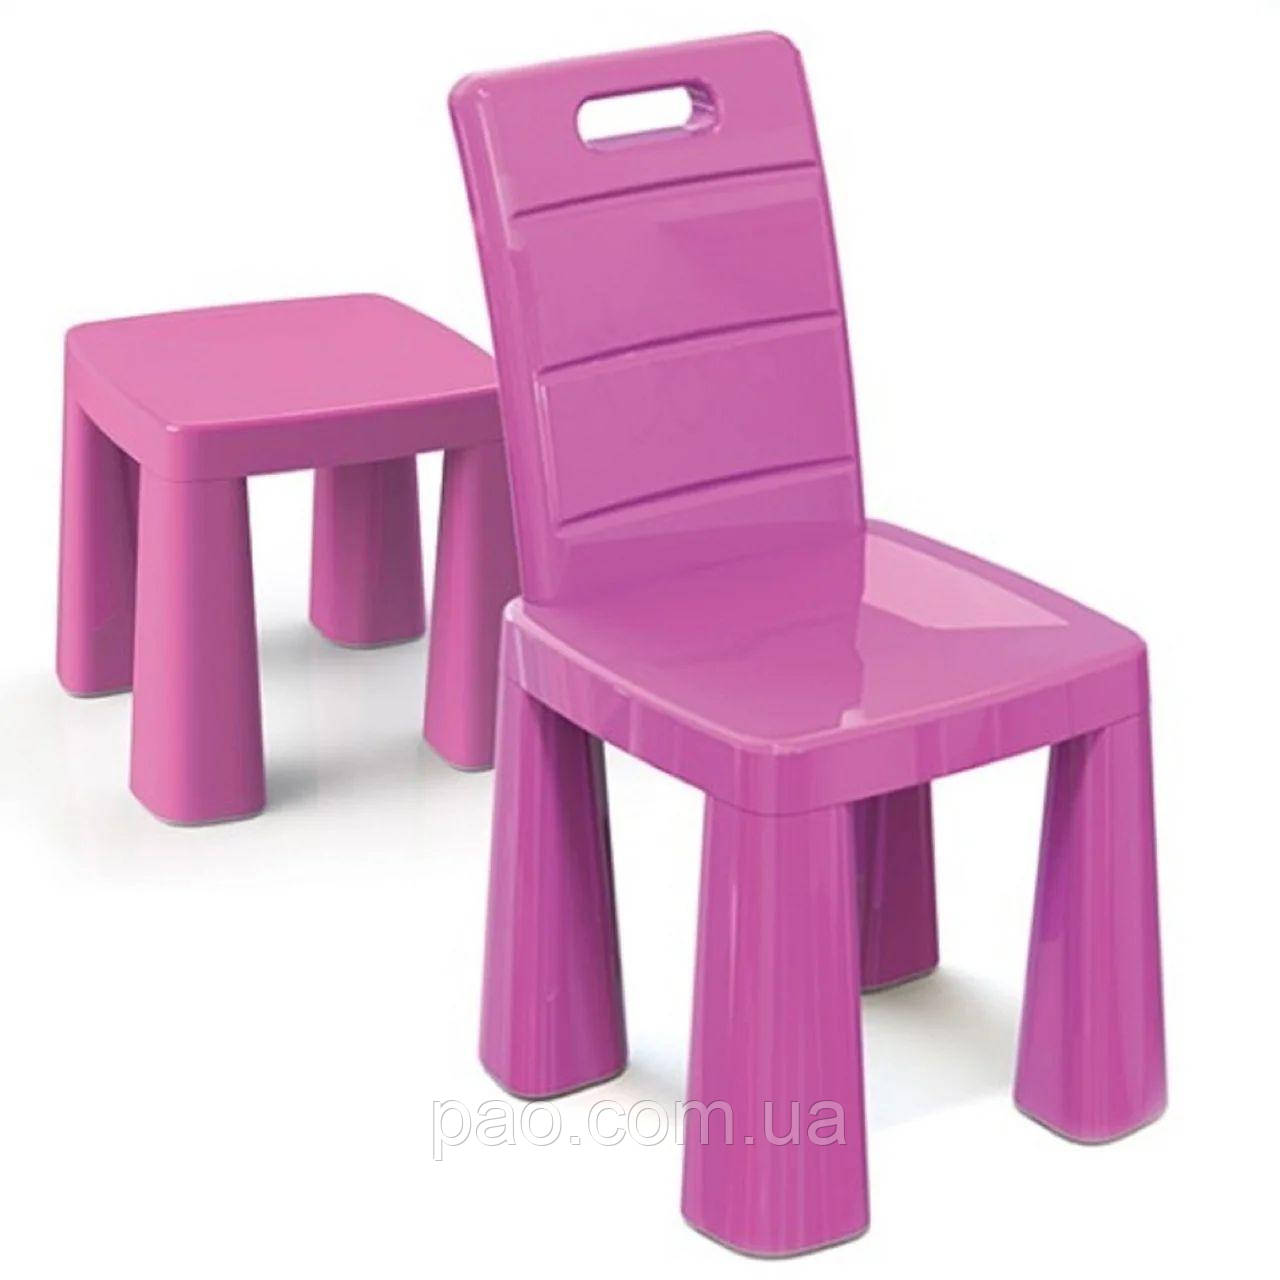 Пластиковый стульчик для детей ТМ Doloni 2в1, стул-табурет розовый